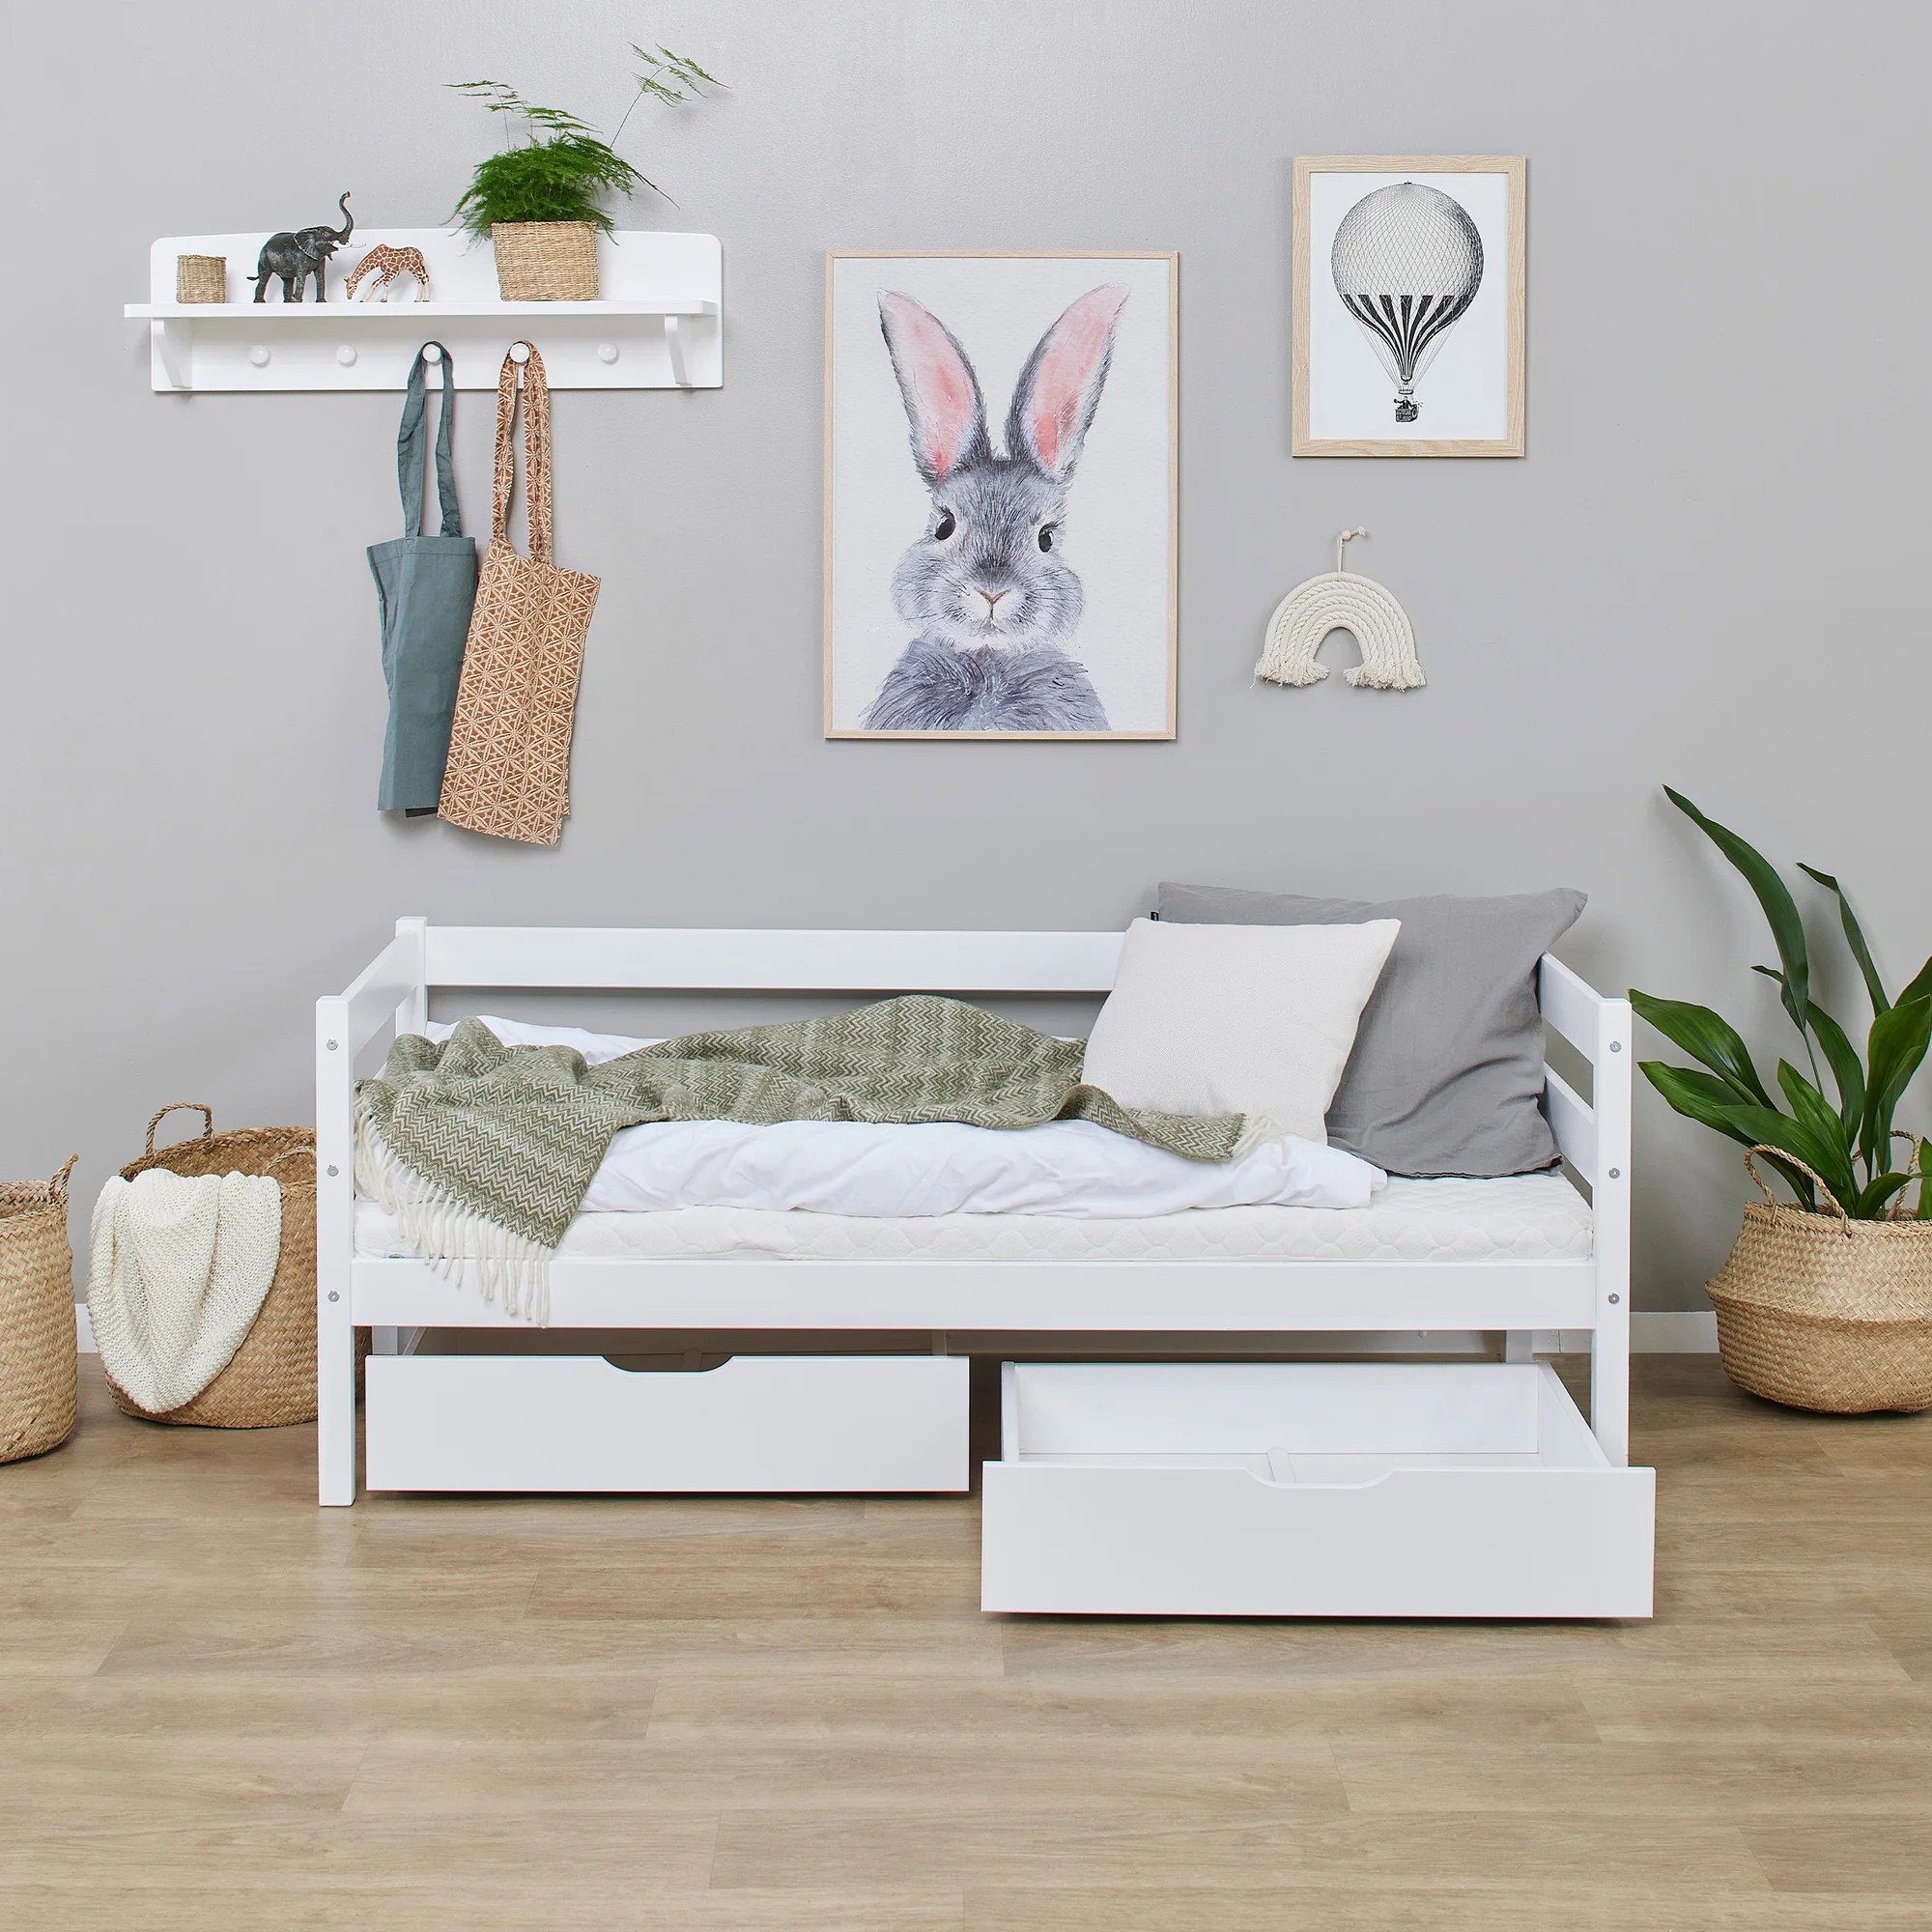 70x160 Bettschubkasten Hoppekids Weiß cm für Schubladenset Betten